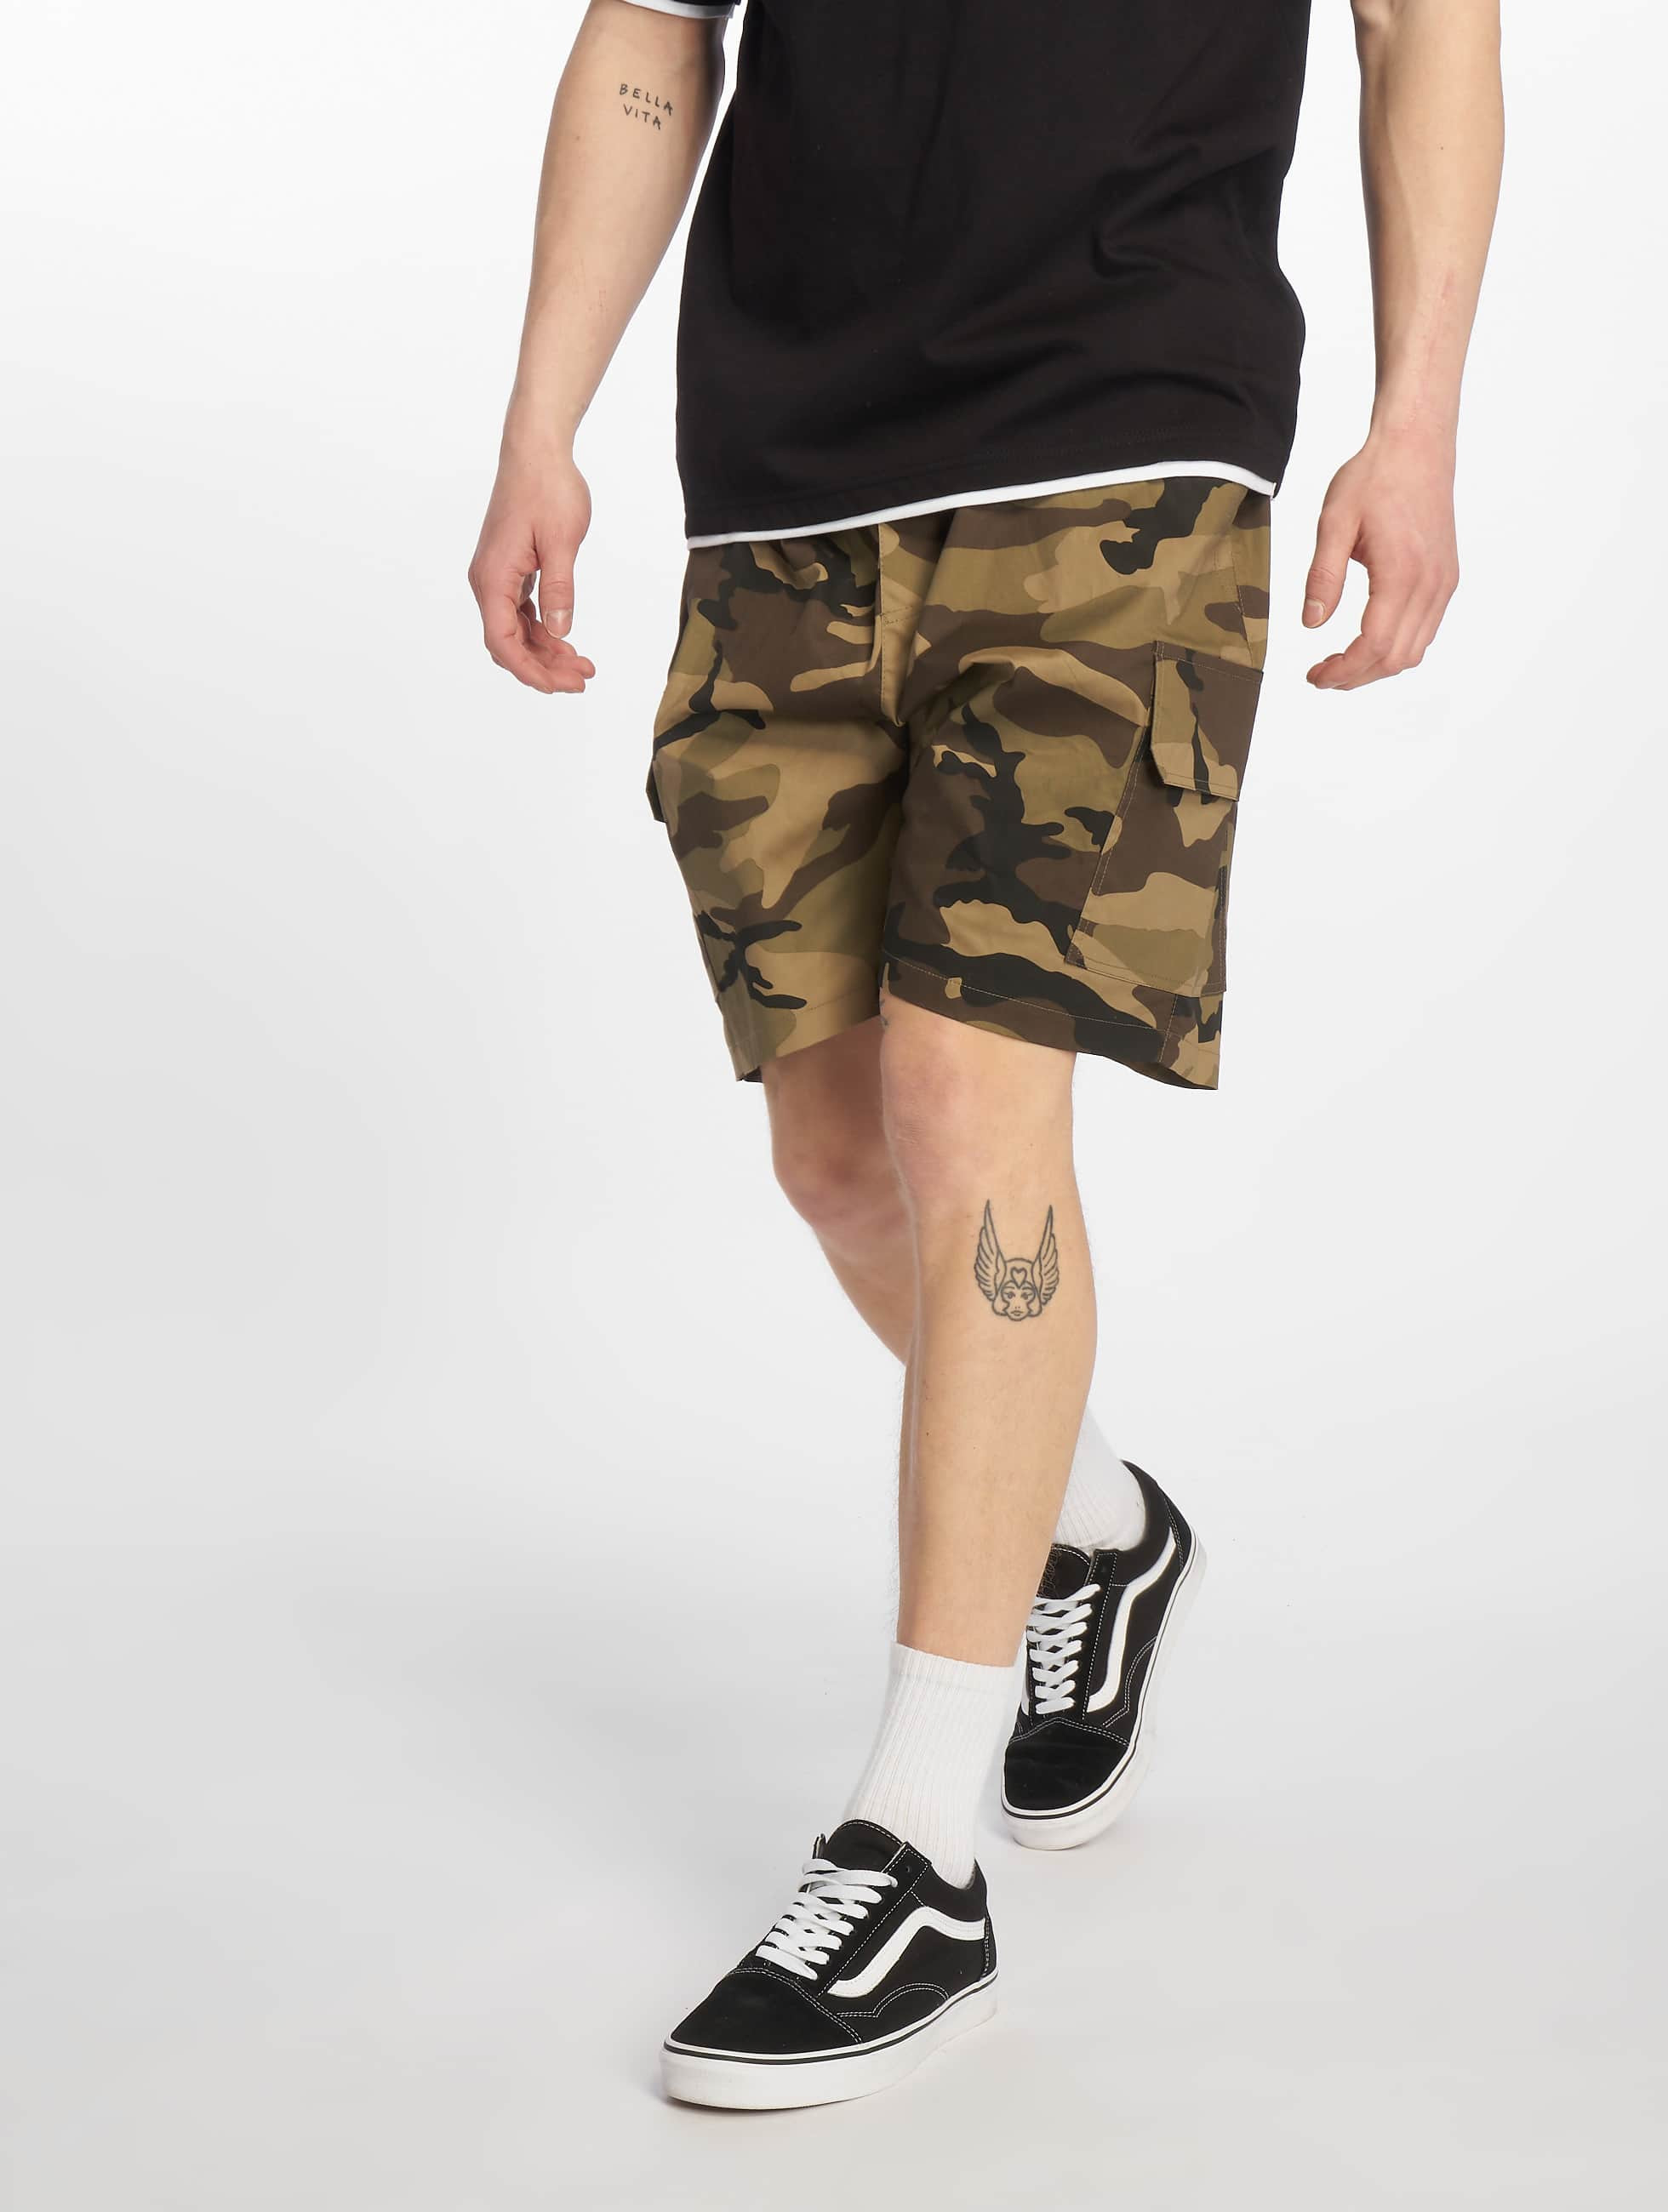 Bild von Sixth June Männer Shorts Fashion Army in camouflage